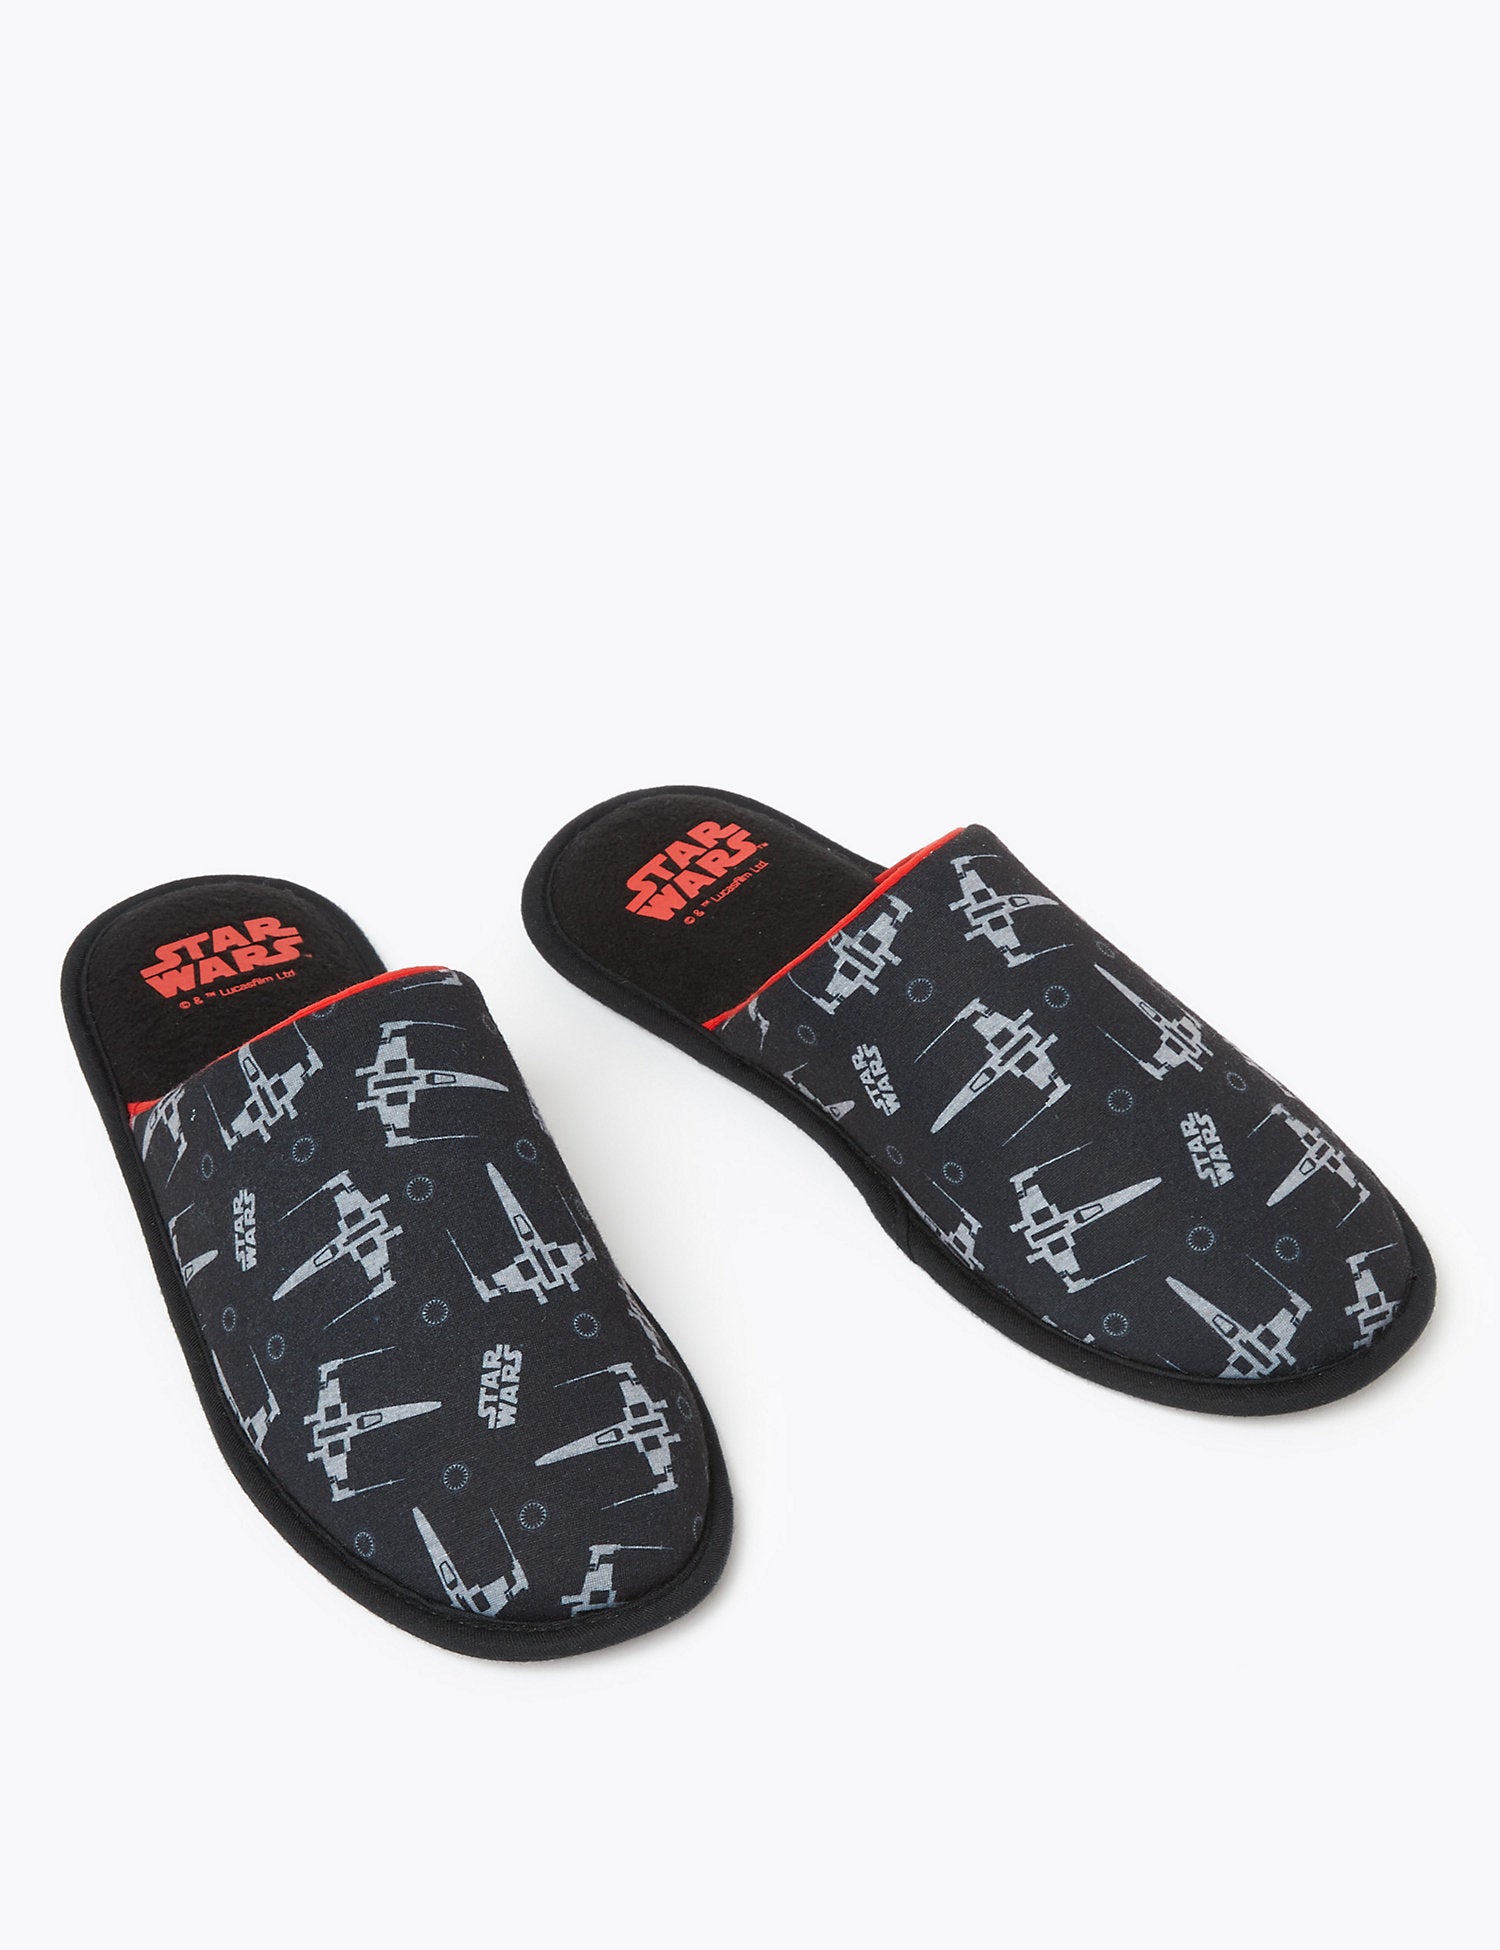 Star Warsâ„¢ Mule Slippers with FreshFeetâ„¢